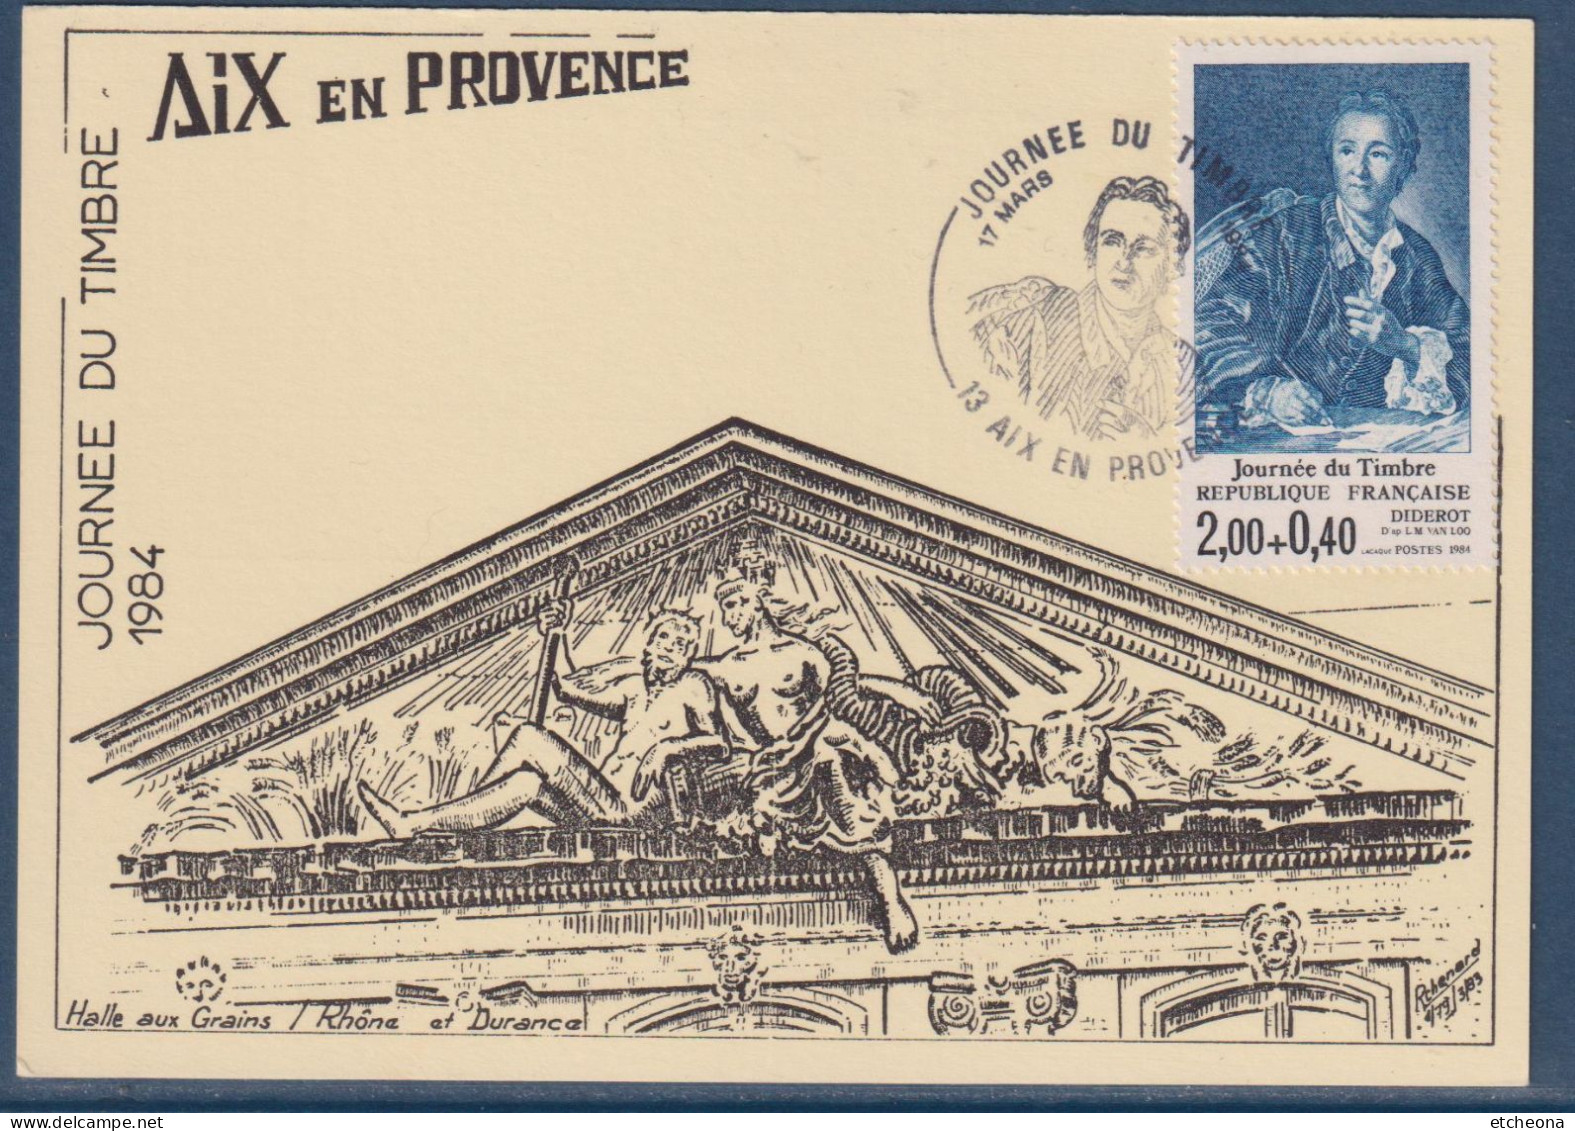 Journée Du Timbre 1984 Diderot D'après L. M. Van Loo N°2304 Aix En Provence 17 Mars 1984 - 1980-1989